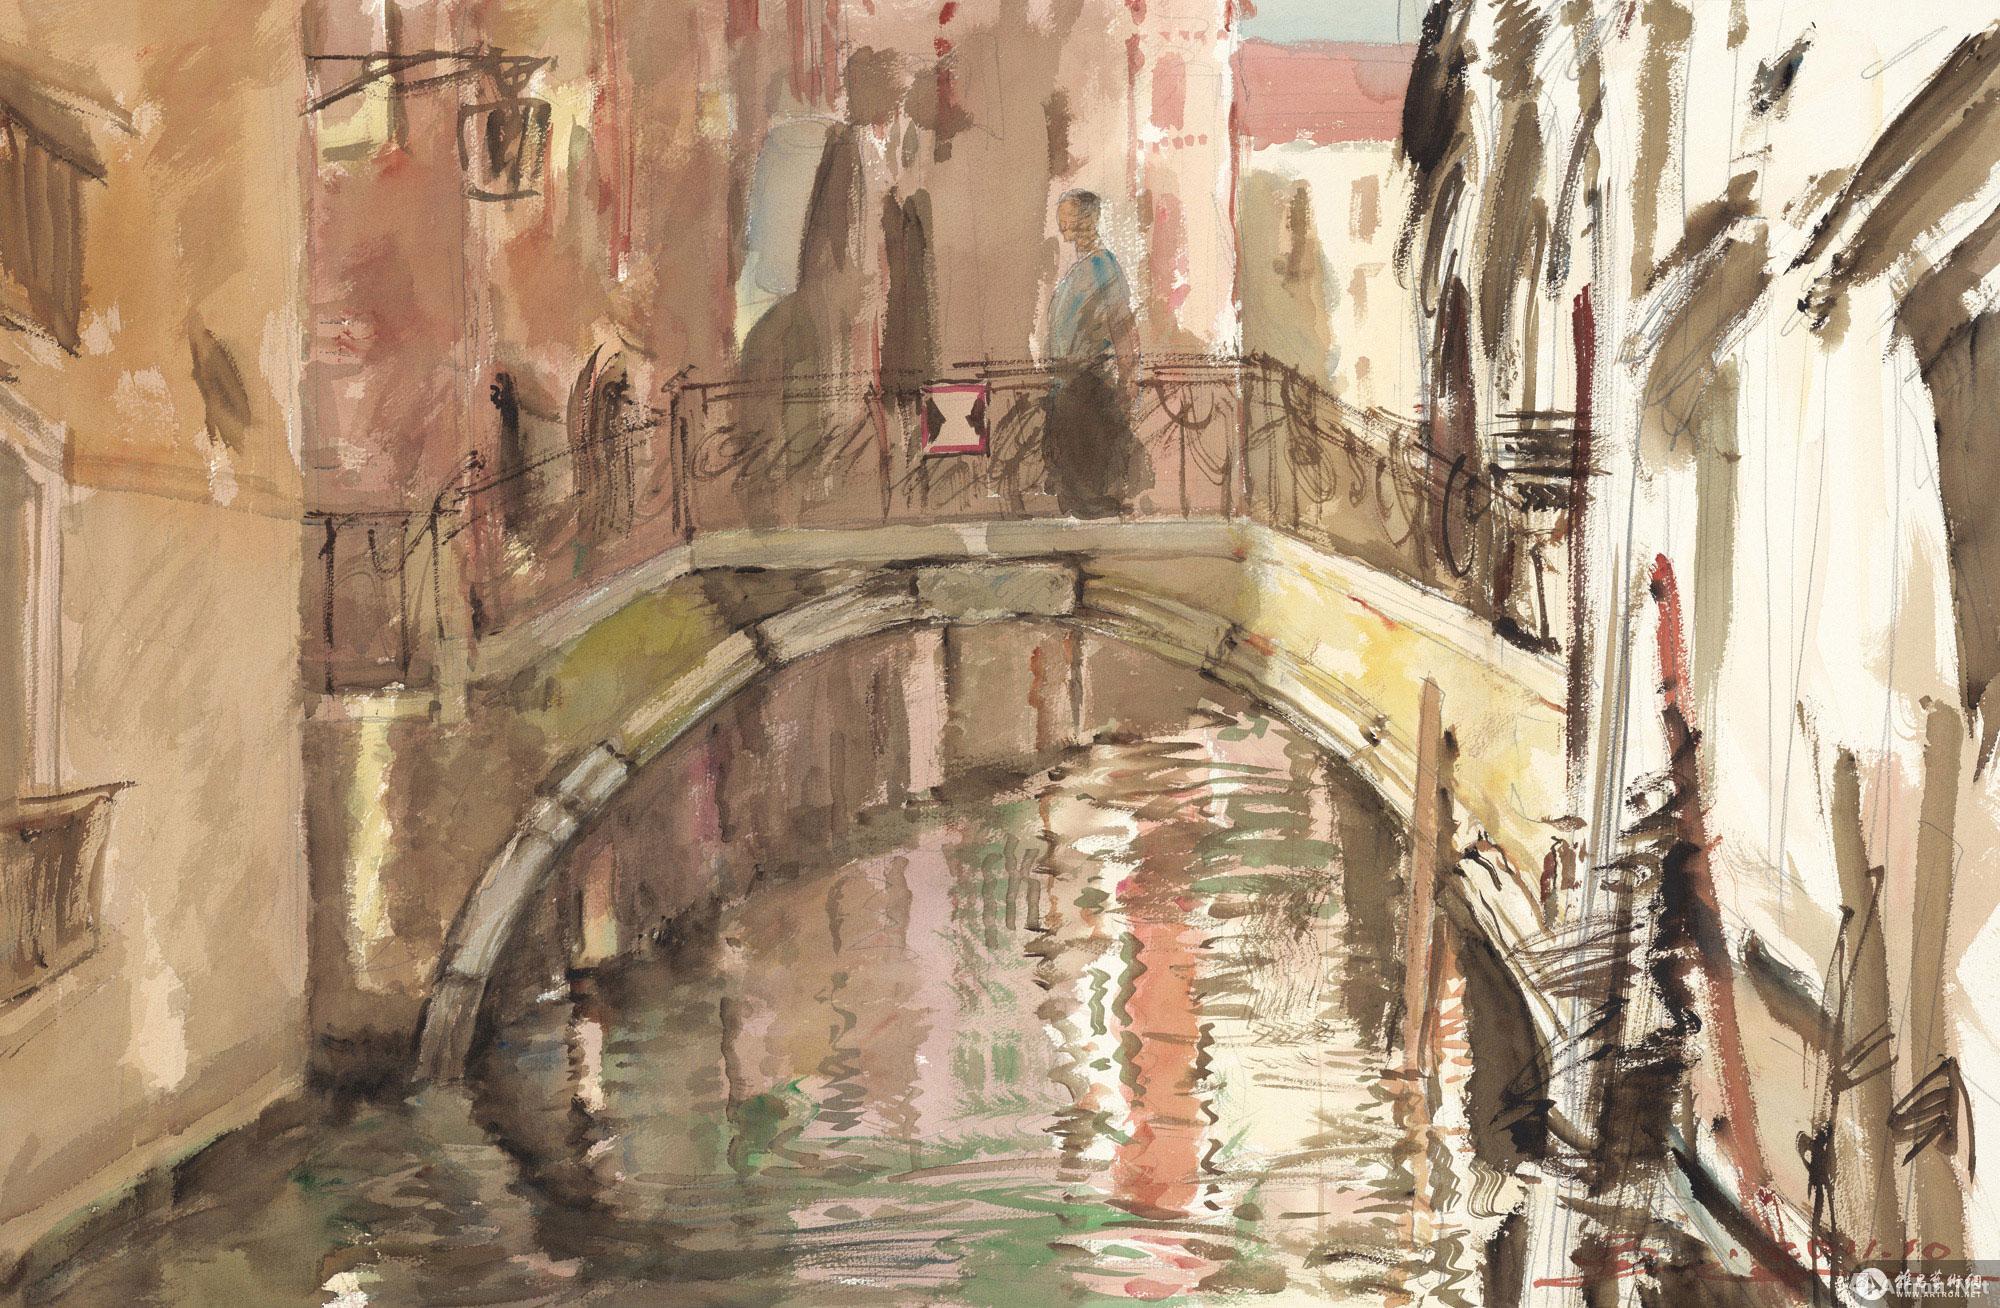 威尼斯印象No.12 No.12 of the Impressions of Venice